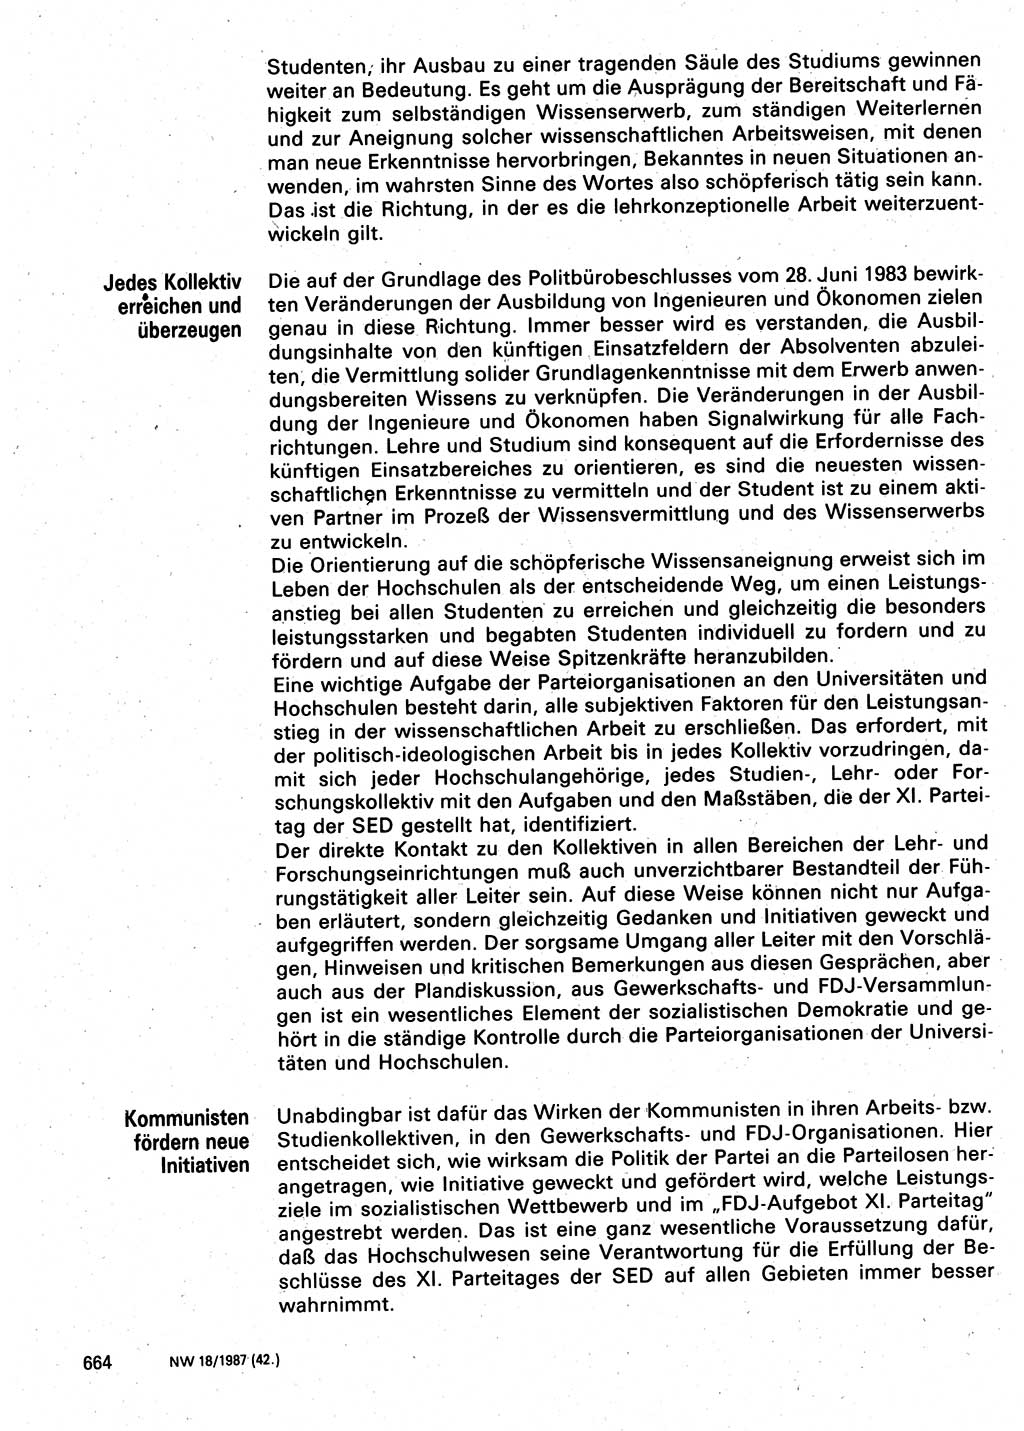 Neuer Weg (NW), Organ des Zentralkomitees (ZK) der SED (Sozialistische Einheitspartei Deutschlands) für Fragen des Parteilebens, 42. Jahrgang [Deutsche Demokratische Republik (DDR)] 1987, Seite 664 (NW ZK SED DDR 1987, S. 664)